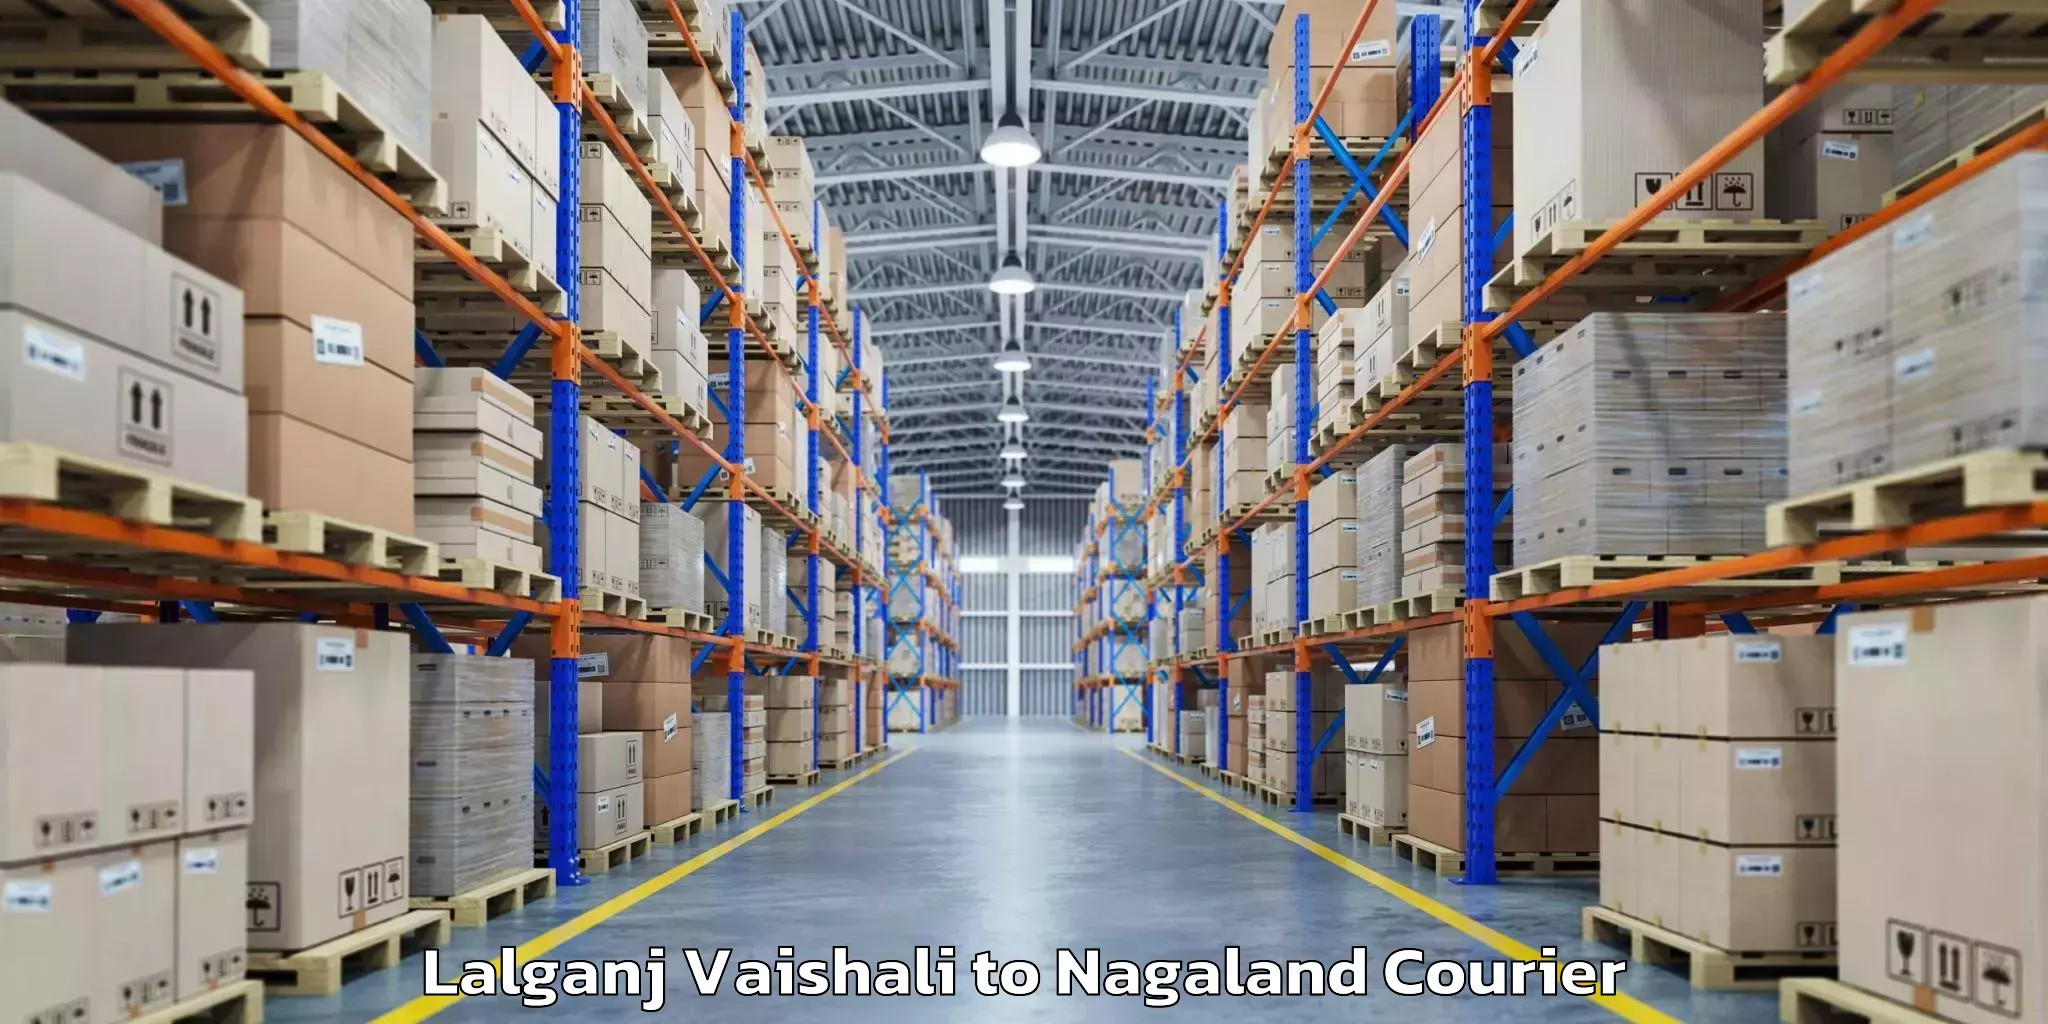 Luggage transfer service Lalganj Vaishali to Nagaland